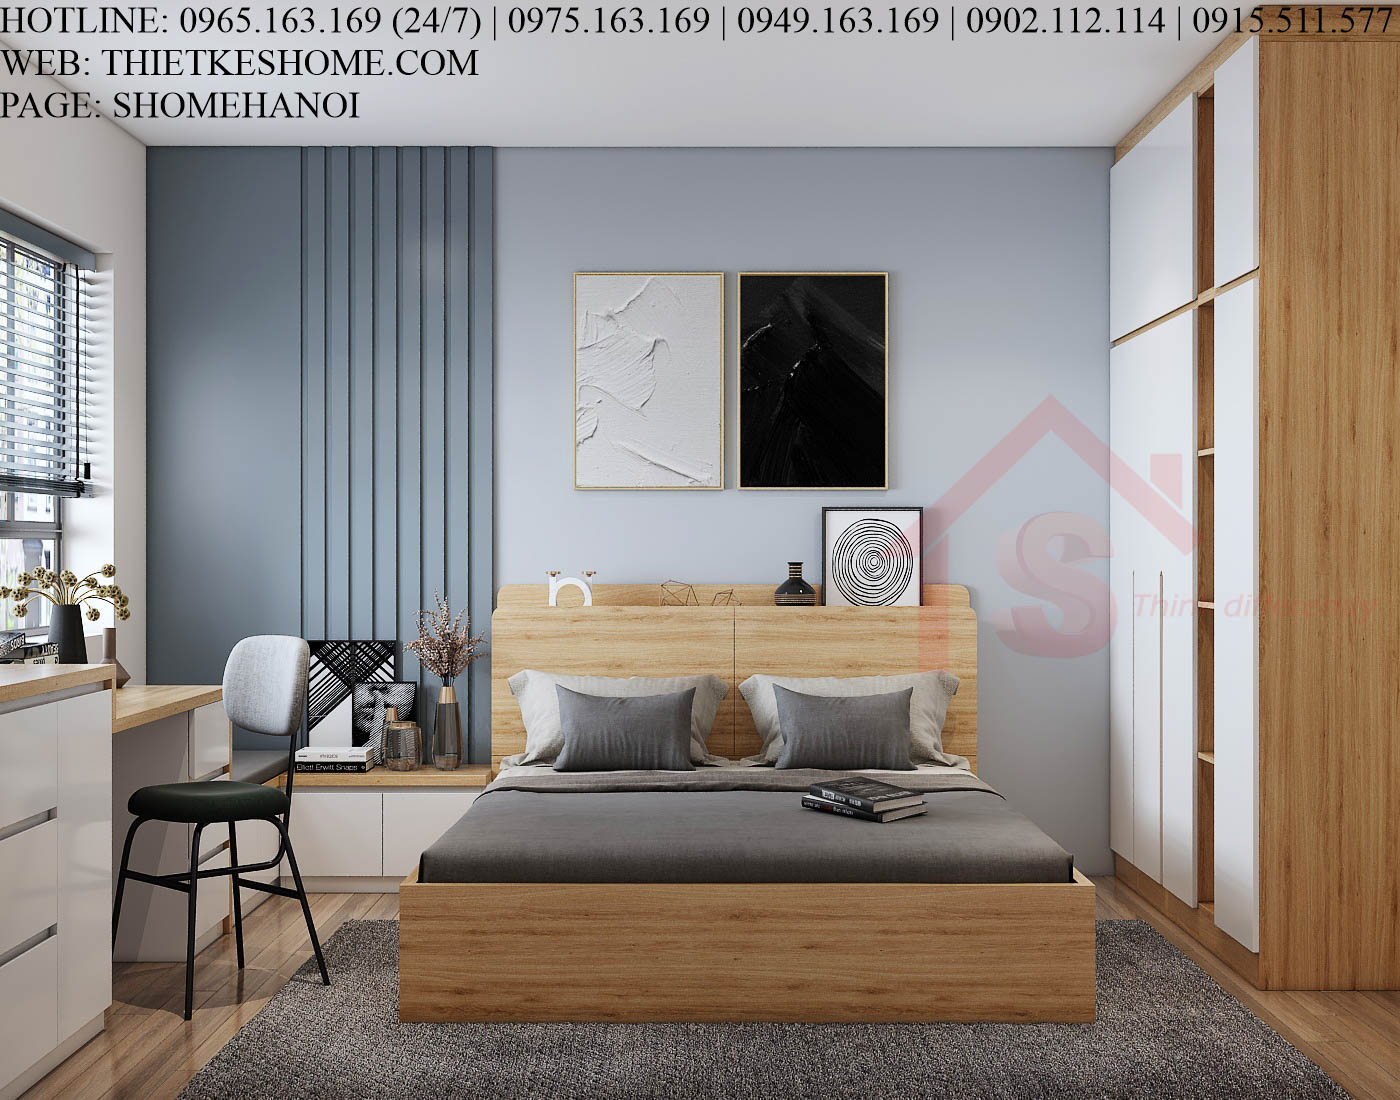 S HOME Combo mẫu nội thất phòng ngủ đẹp hiện đại tiện dụng SHOME6811